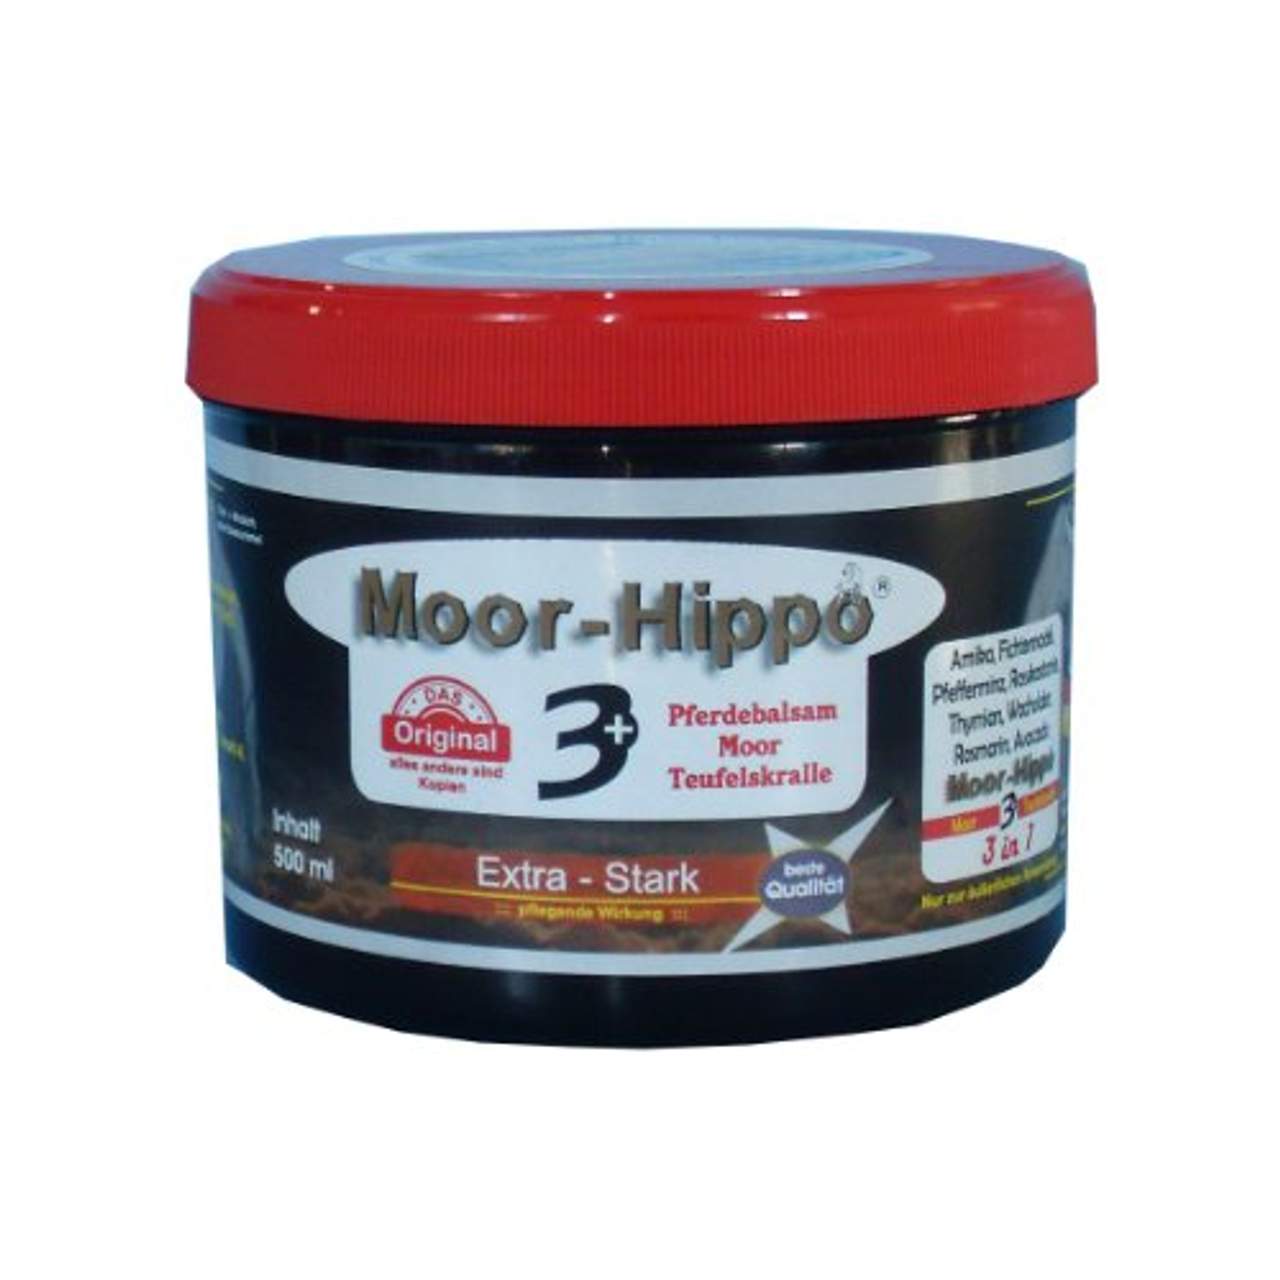 Hago Moor Hippo 3 Pferdebalsam